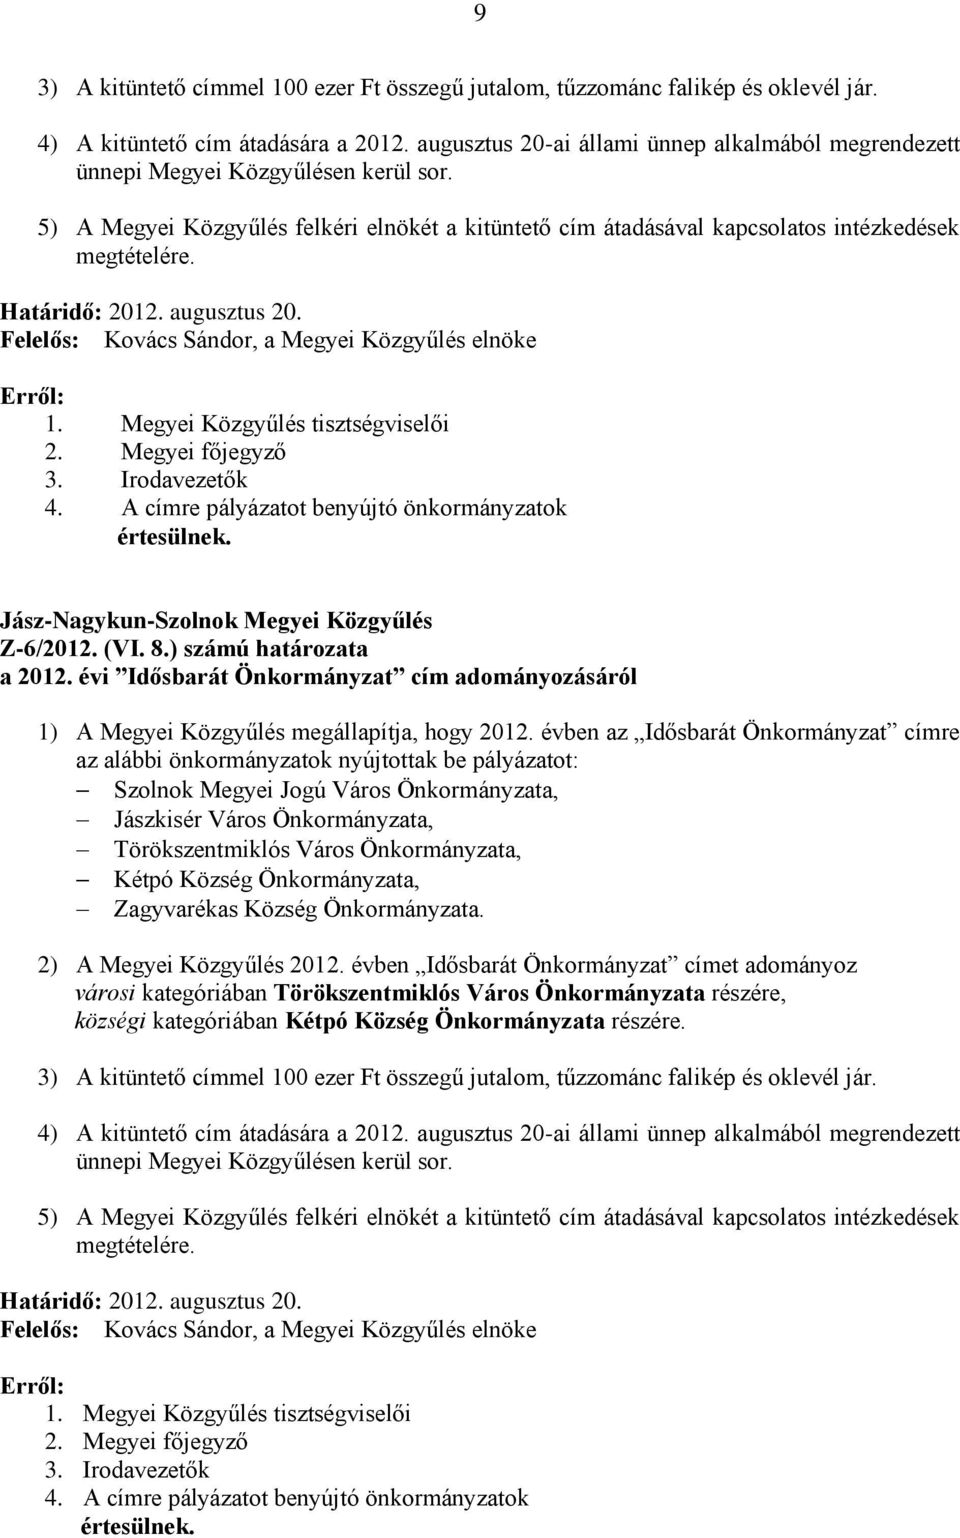 Határidő: 2012. augusztus 20. Felelős: Kovács Sándor, a Megyei Közgyűlés elnöke 3. Irodavezetők 4. A címre pályázatot benyújtó önkormányzatok Z-6/2012. (VI. 8.) számú határozata a 2012.